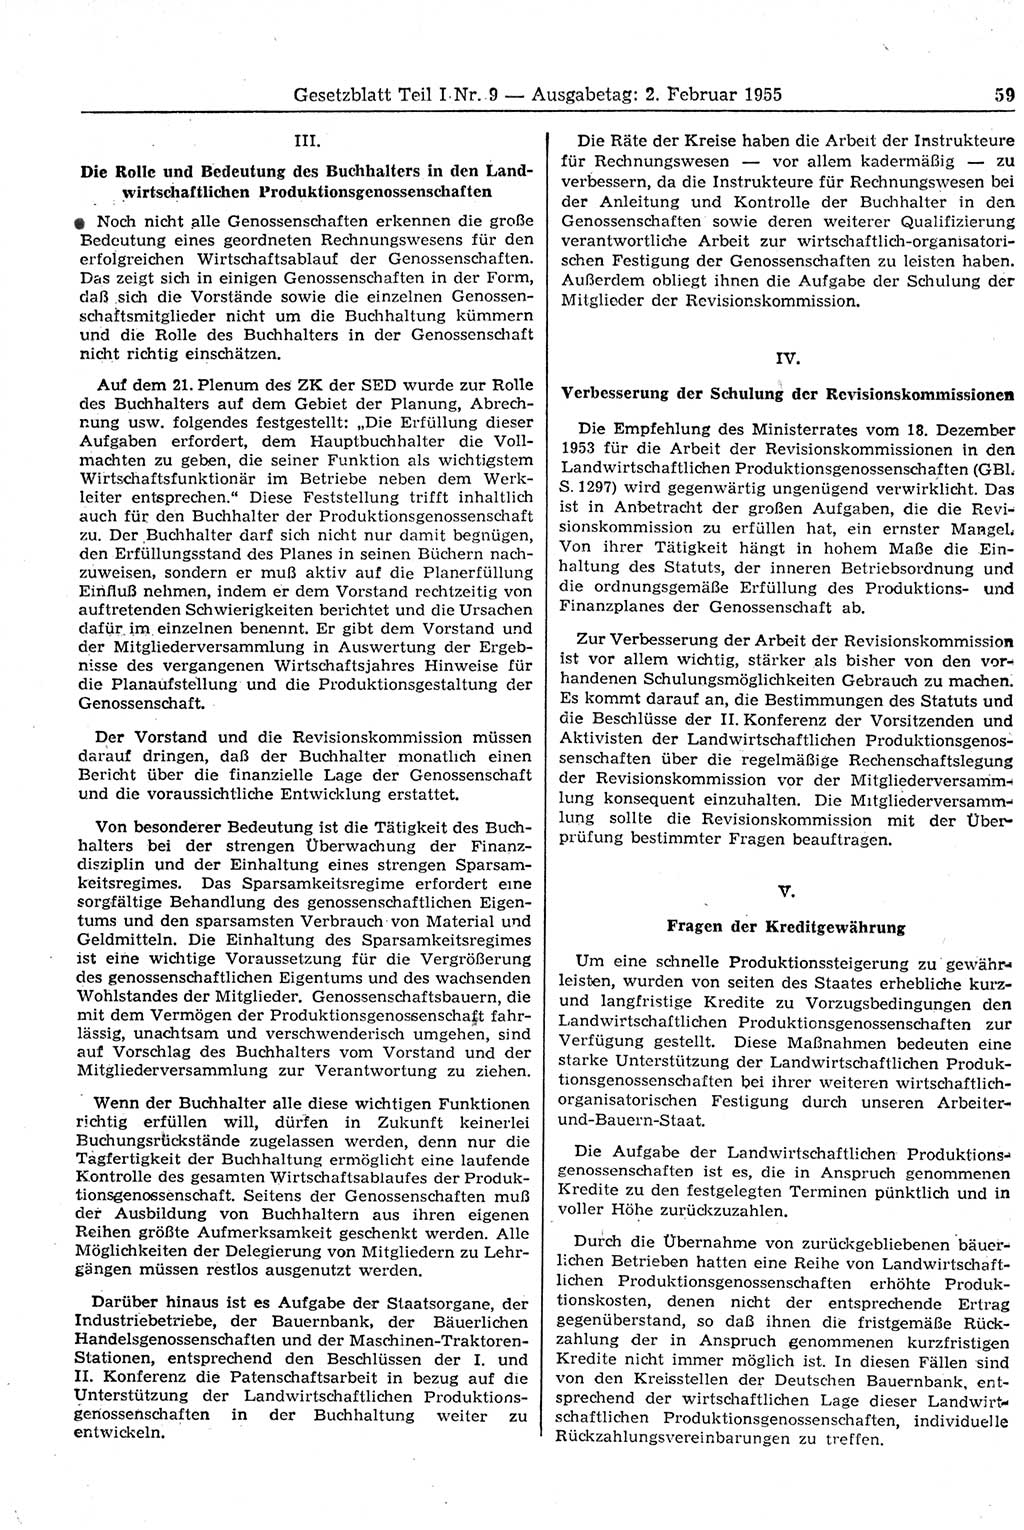 Gesetzblatt (GBl.) der Deutschen Demokratischen Republik (DDR) Teil Ⅰ 1955, Seite 59 (GBl. DDR Ⅰ 1955, S. 59)